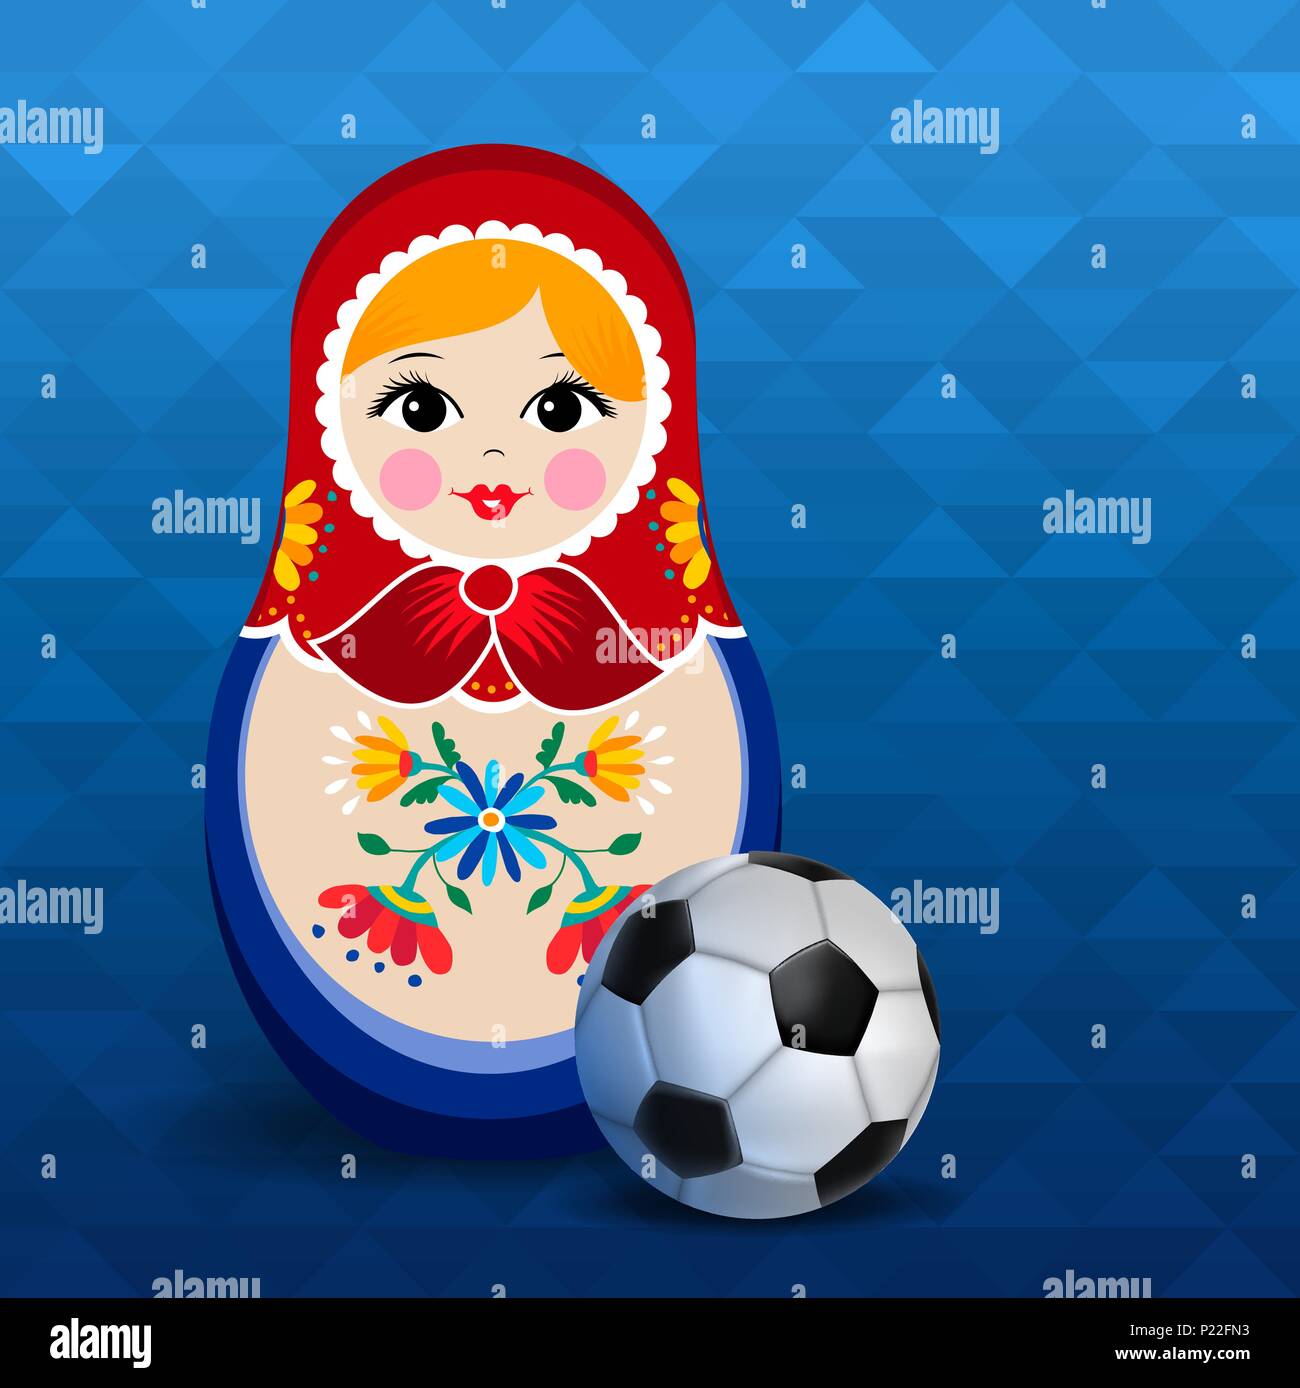 Russische Puppe Plakat für Russland Sport Event. Traditionelle matrioska Frau Souvenir mit Fußball auf blaue Farbe Hintergrund. EPS 10 Vektor. Stock Vektor